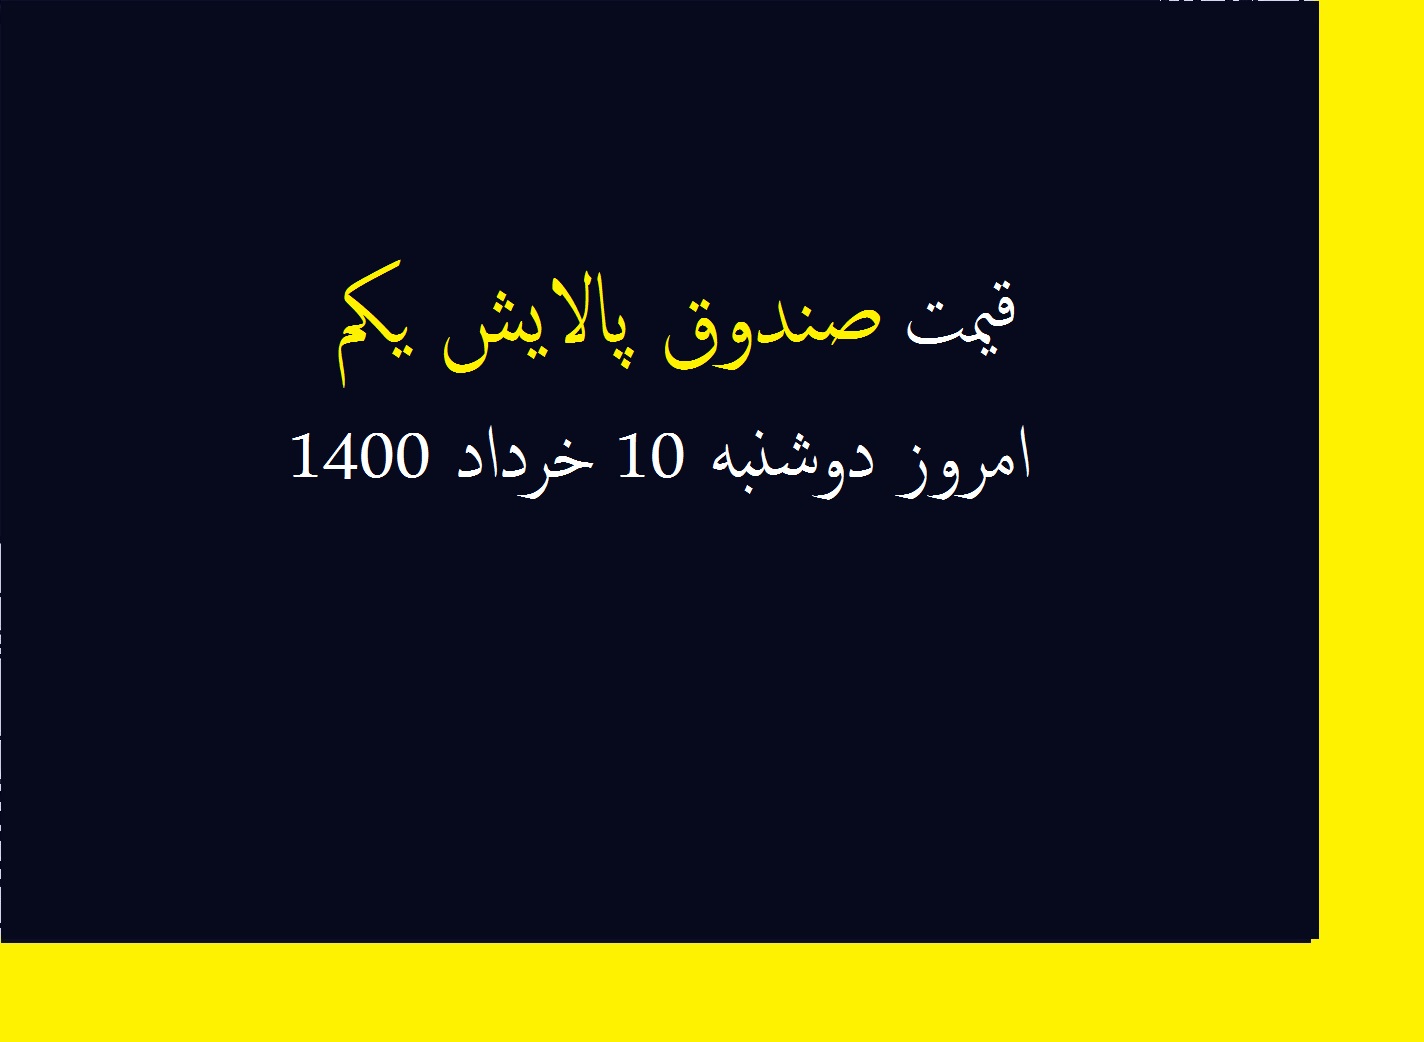 قیمت صندوق پالایش یکم امروز دوشنبه 10 خرداد 1400